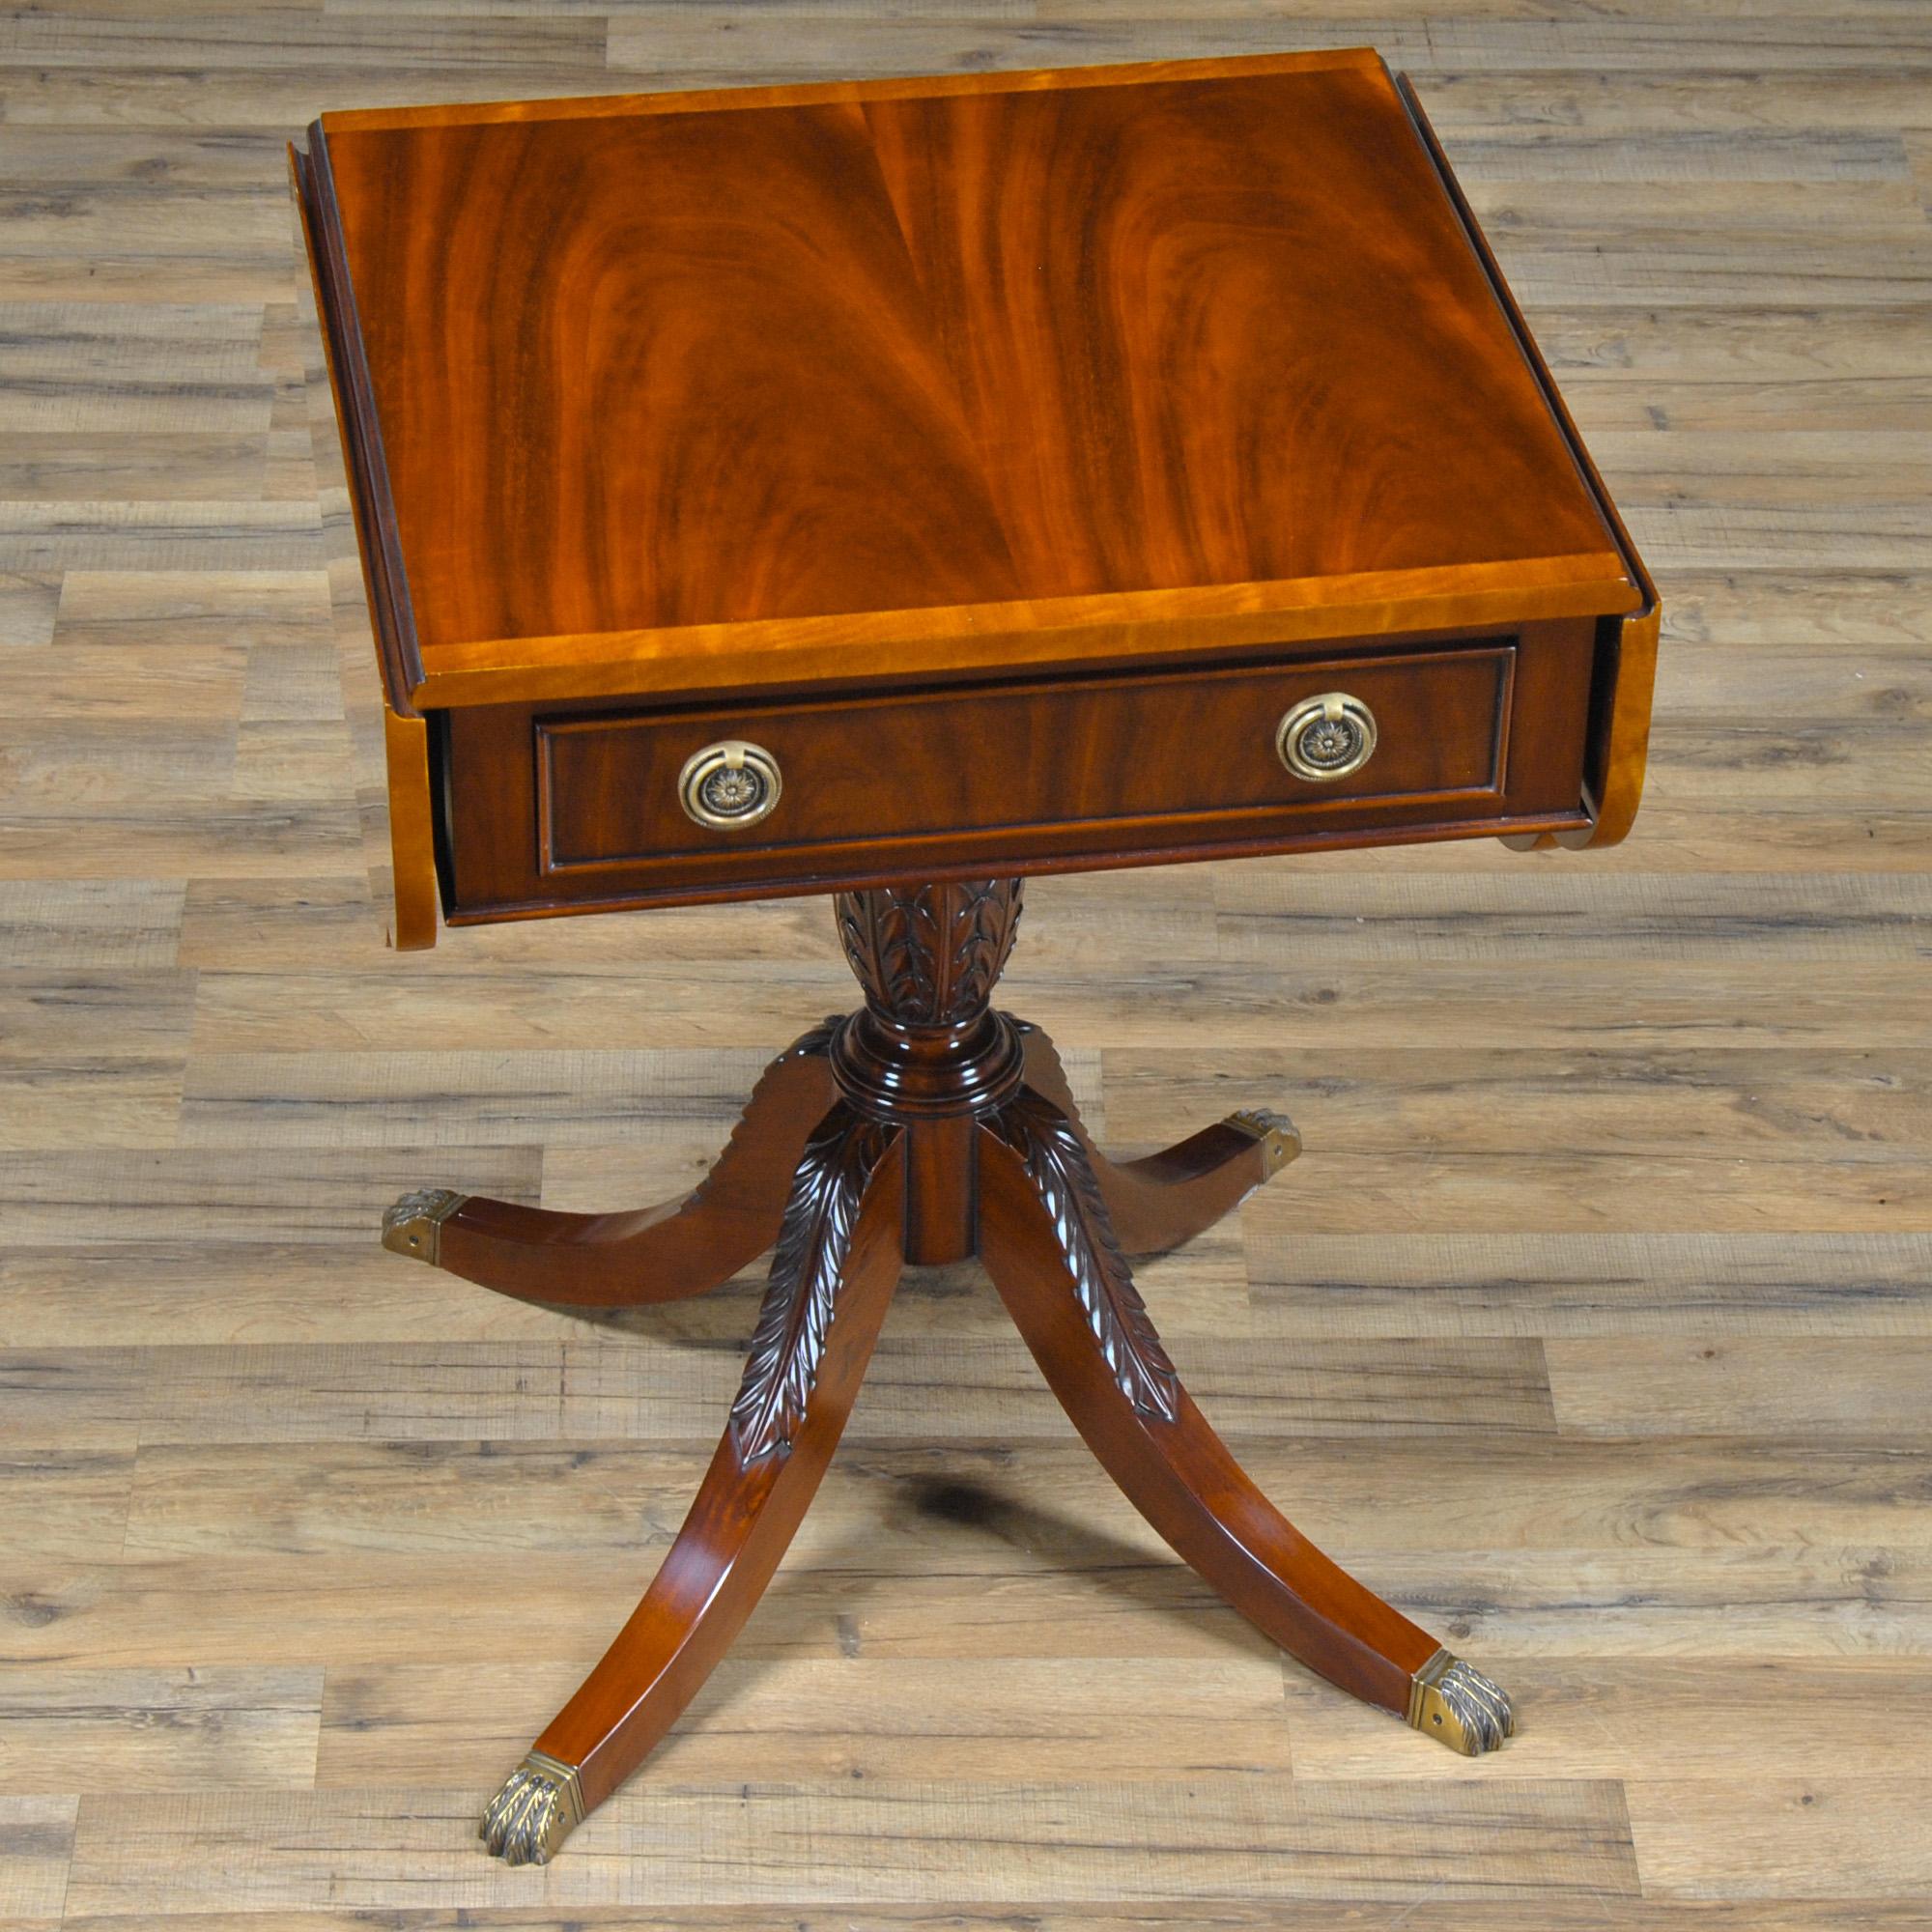 Renaissance Dropside Table For Sale